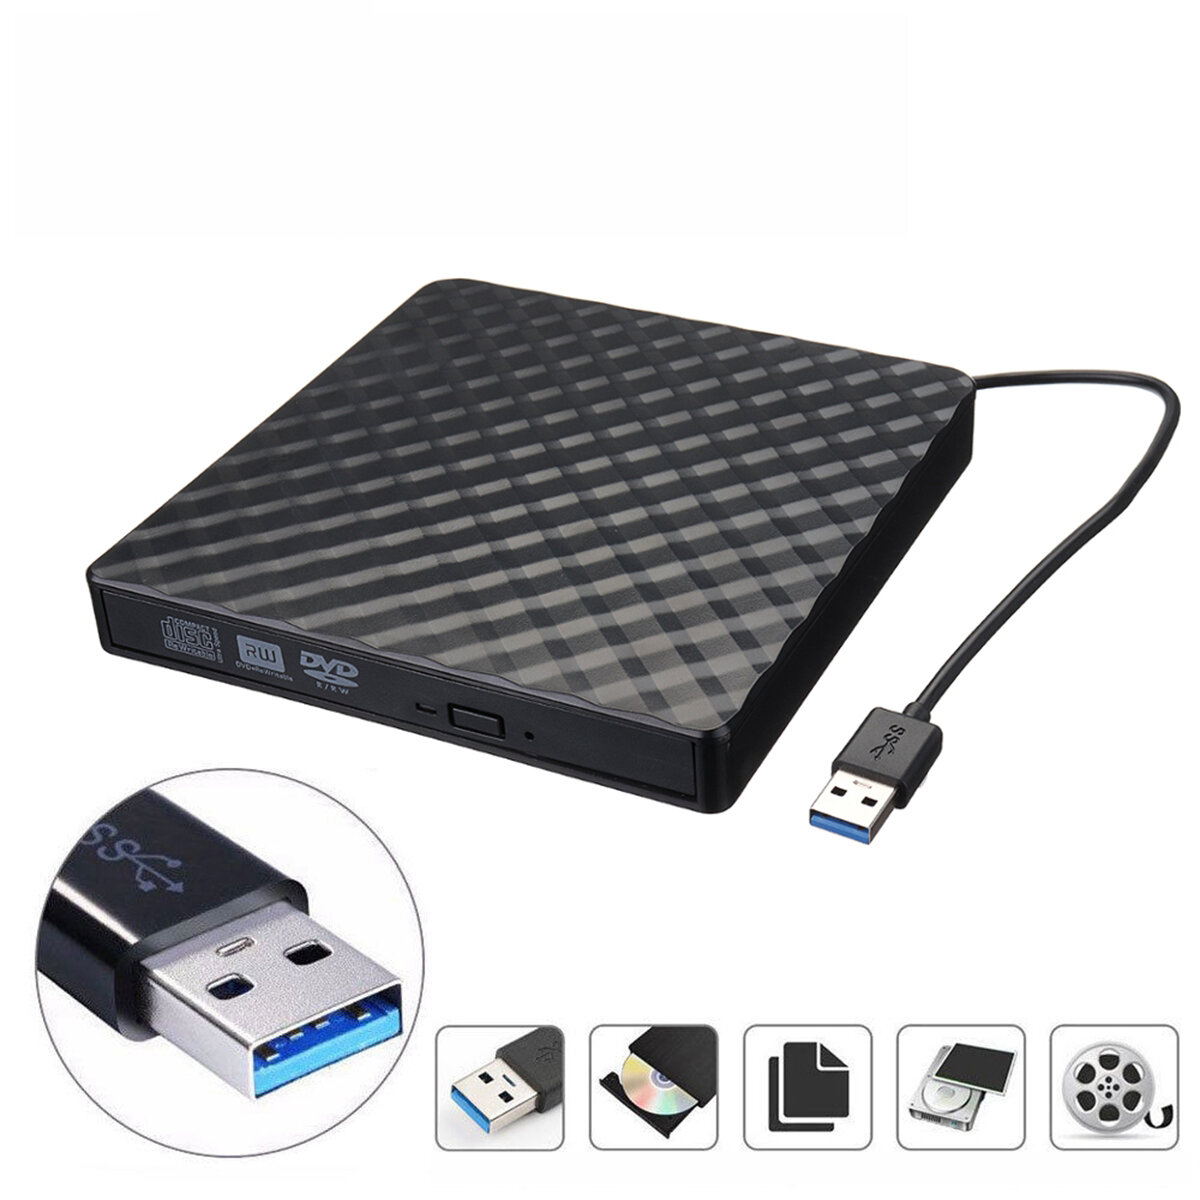 Στα 18.26 € από αποθήκη Τσεχίας | External USB3.0 DVD RW CD Writer Slim Optical Drive Burner Reader Player For PC Laptop